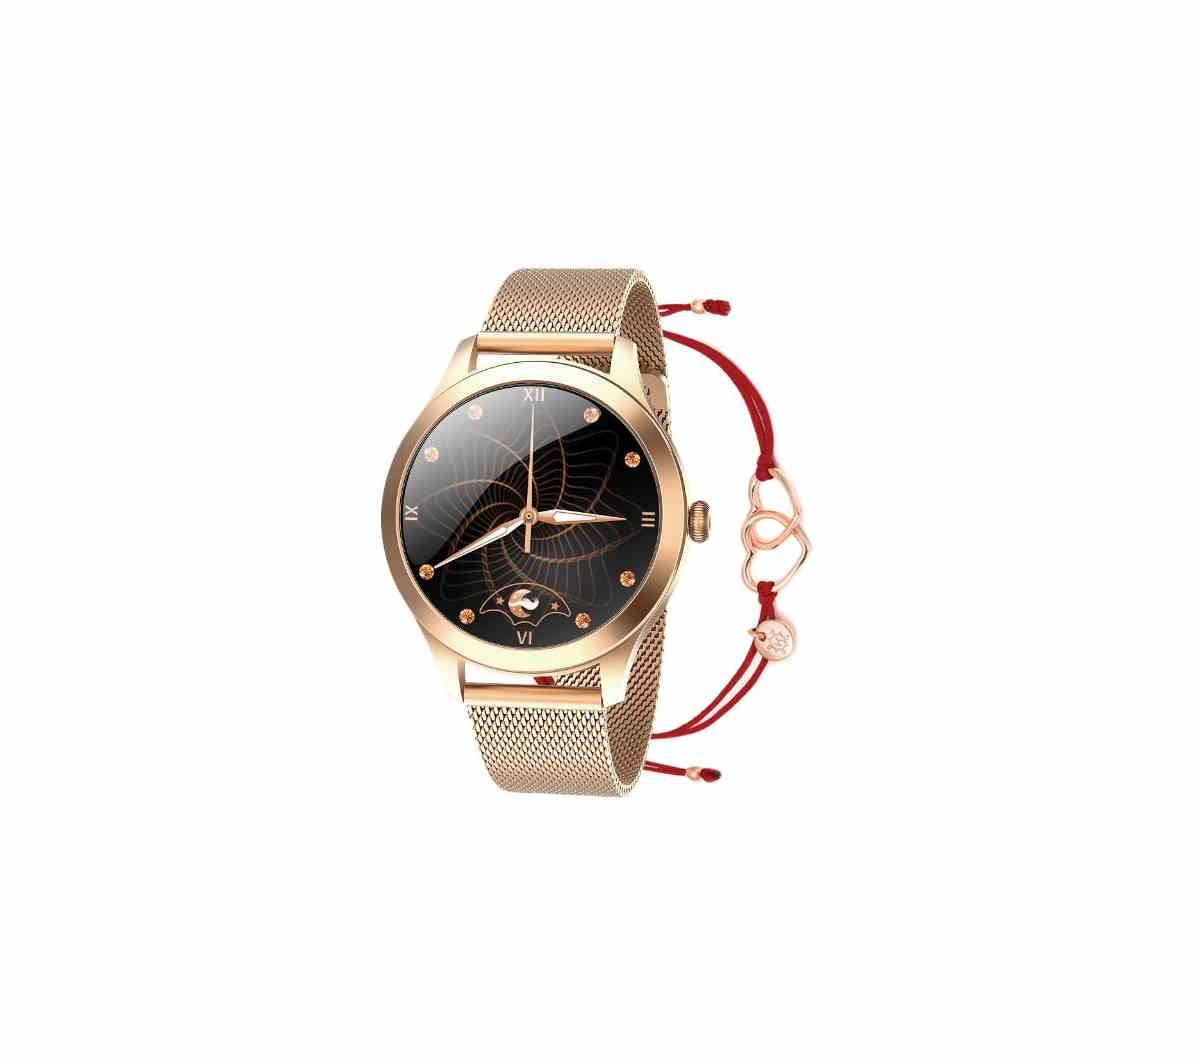 Biżuteryjny smartwatch Maxcom FW42 z bransoletą Ani Kruuk. Biżuteryjny smartwatch Maxcom FW42 dostępny w dwóch wersjach kolorystycznych – złotej i srebrnej wzbogacony został unikalną bransoletką polskiej marki Ania Kruk. 